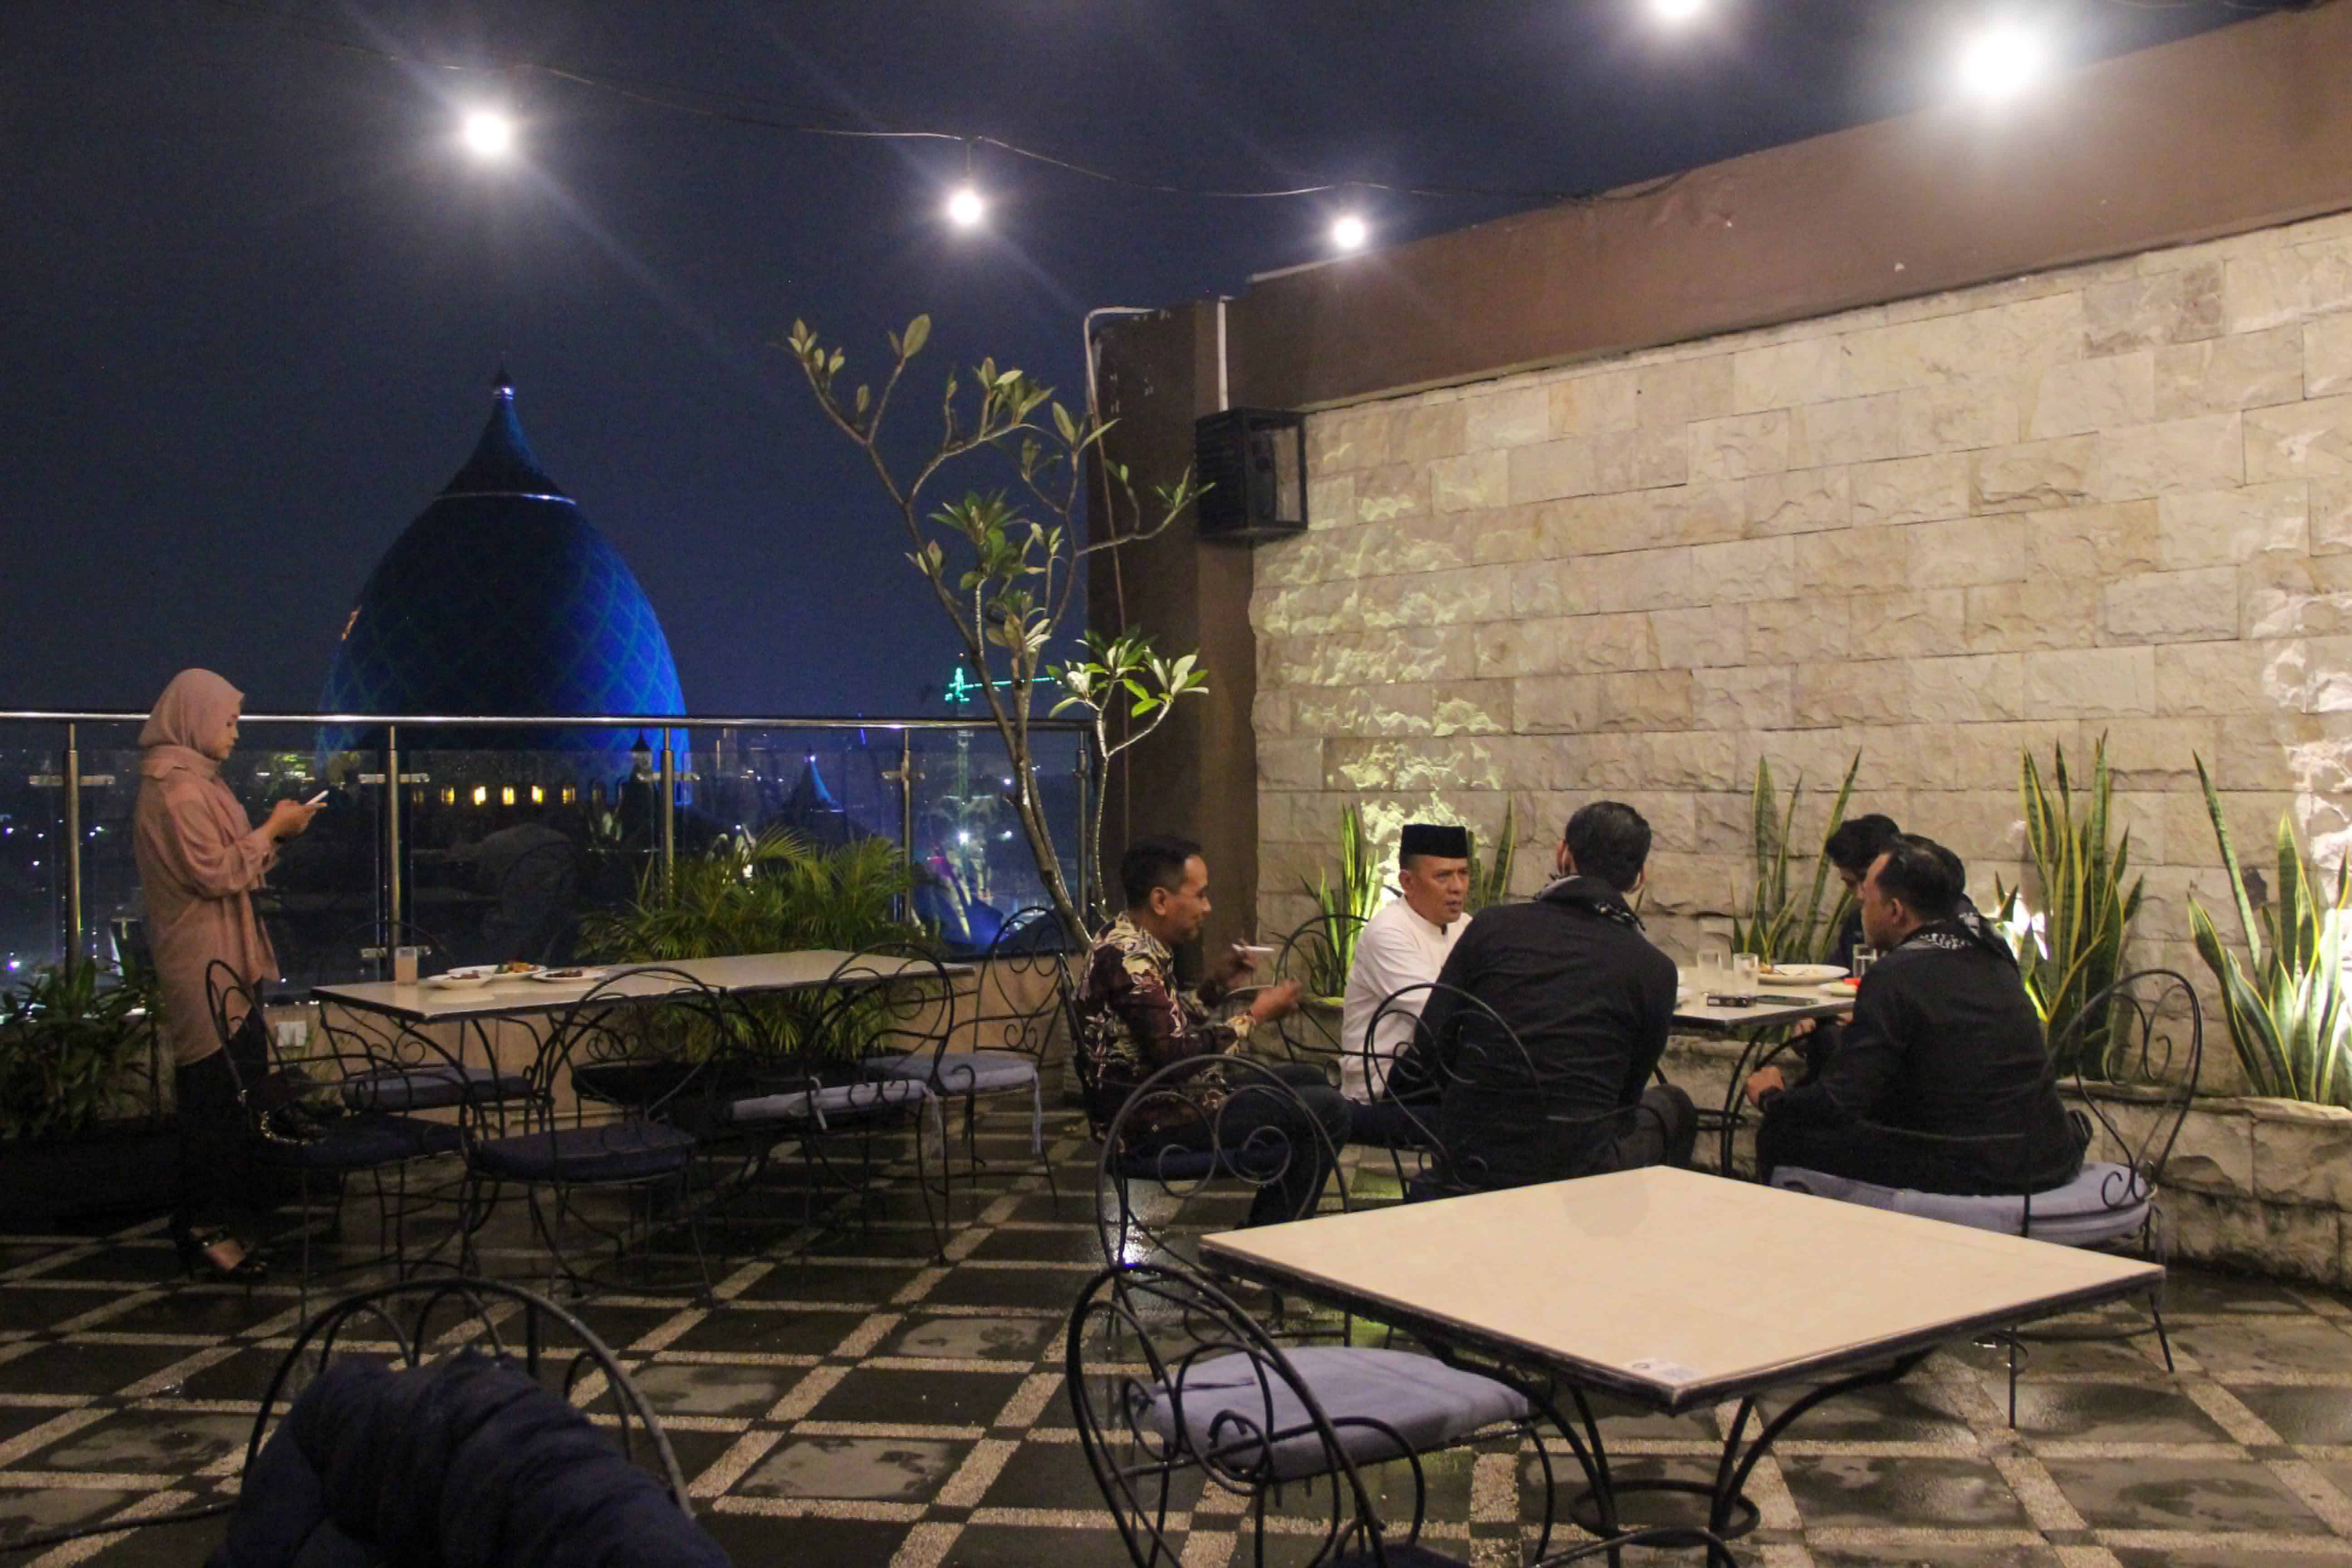 Sajian Menu Iftar 1001 Malam ala Timur Tengah di Namira Syariah Hotel Surabaya